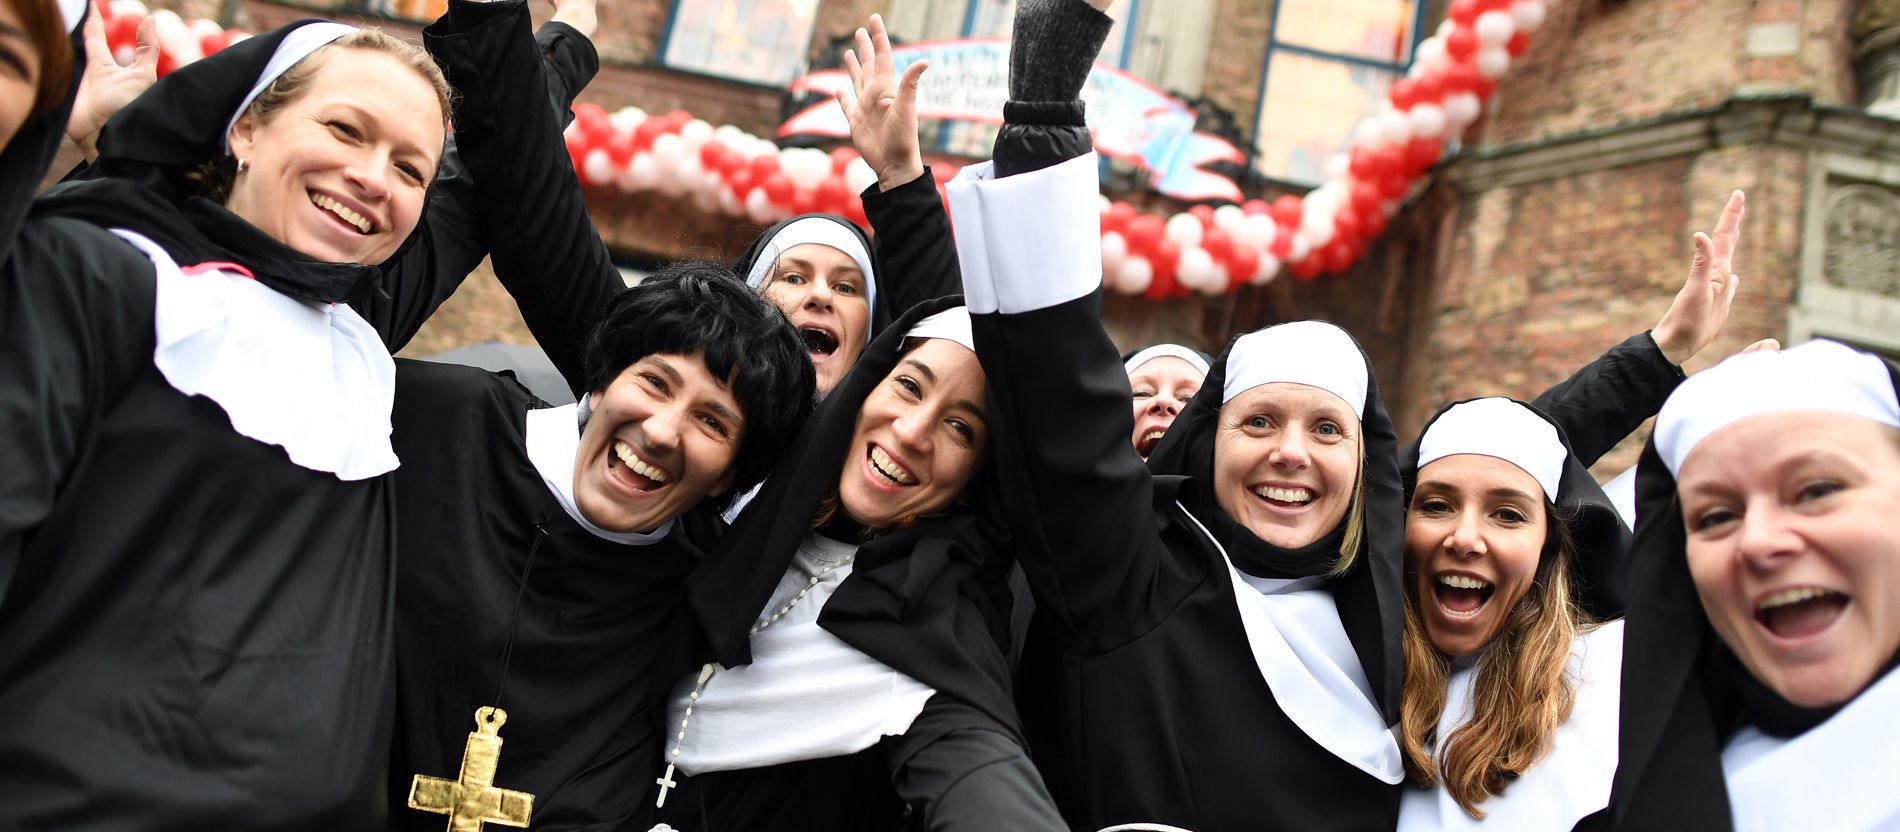 Nonnen-, Priester- oder Papstkostüm im Karneval? Das sagt die Kirche